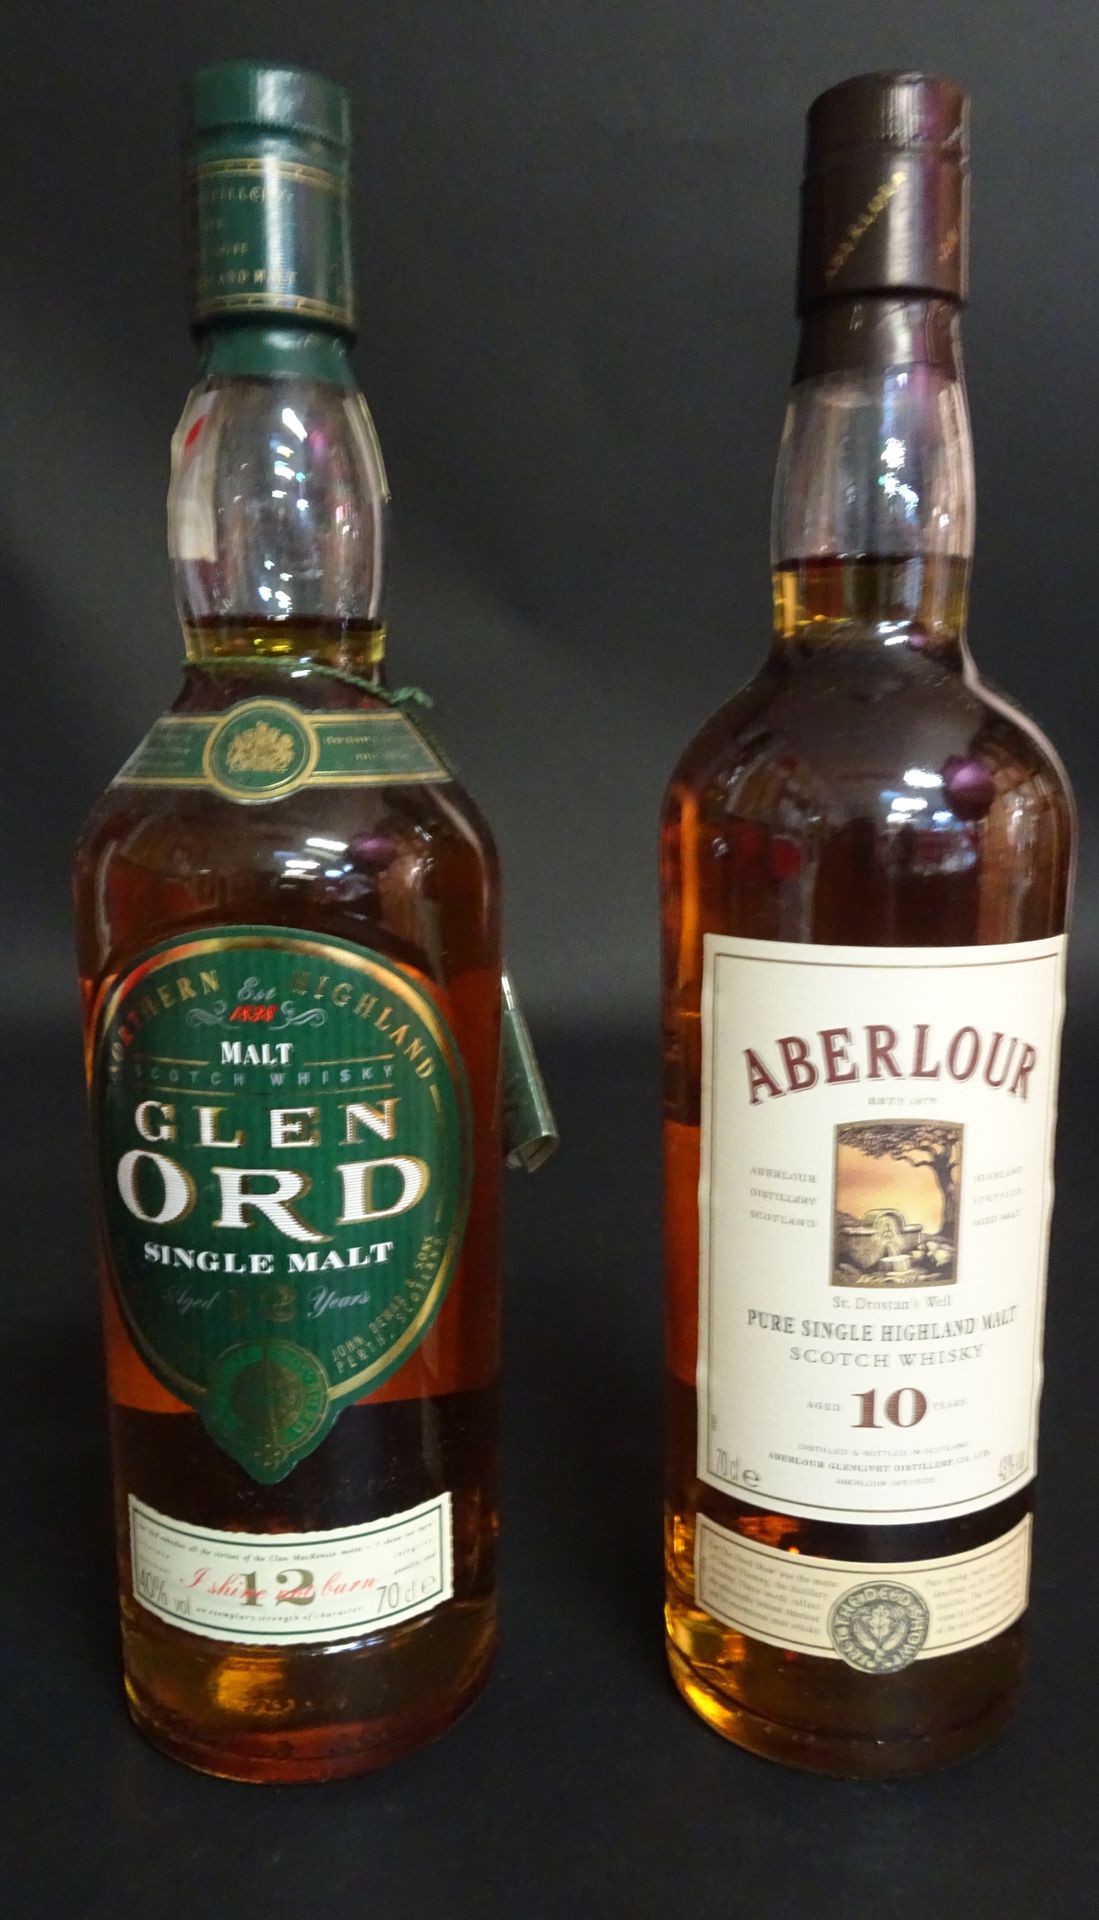 Null Whisky Glen Ord 12 años

+ Whisky Aberlour 10 años

2 botellas